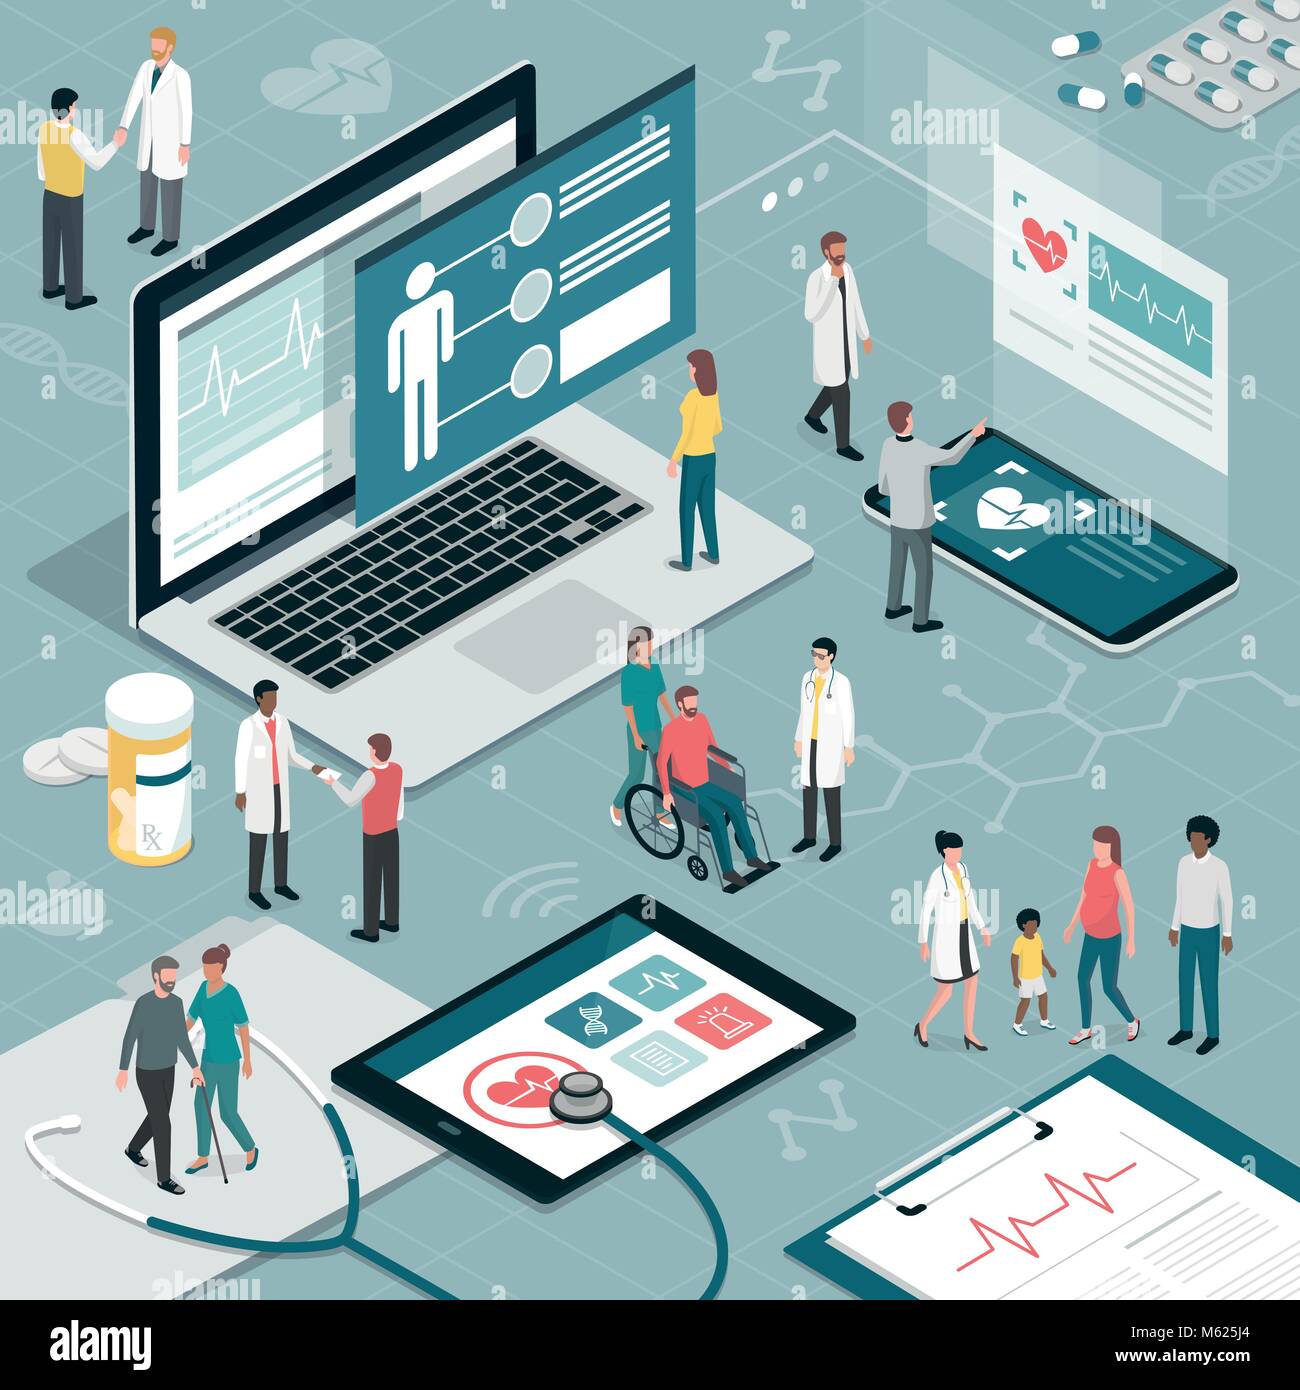 Healthcare und innovative Technologie: Apps für medizinische Prüfungen und online Beratung Konzept Stock Vektor